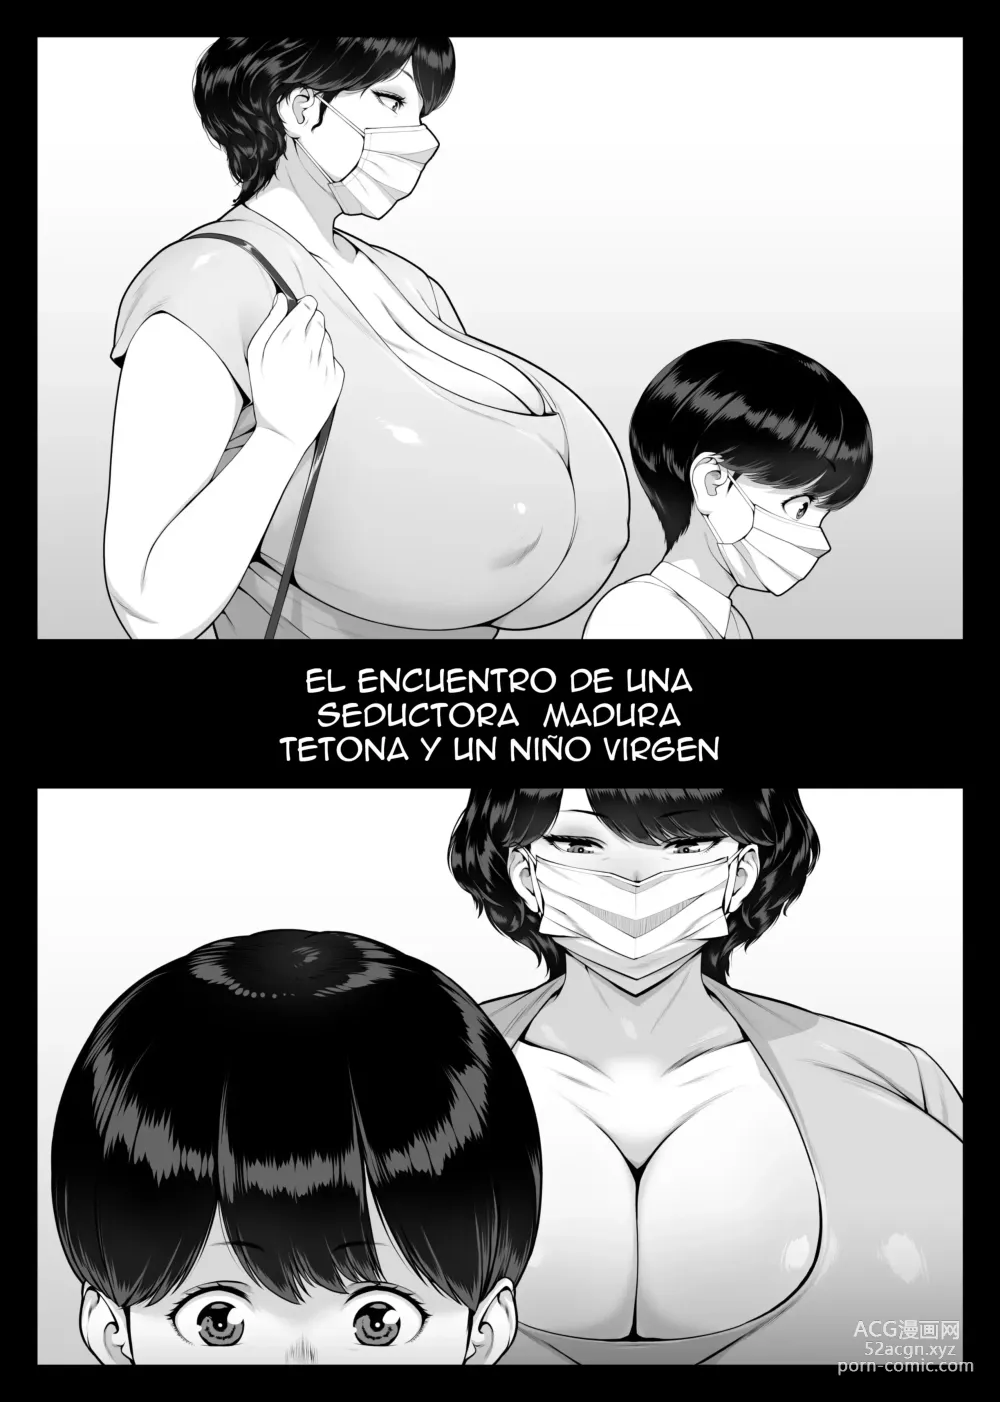 Page 5 of doujinshi El encuentro de una seductora madura tetona y un niño virgen